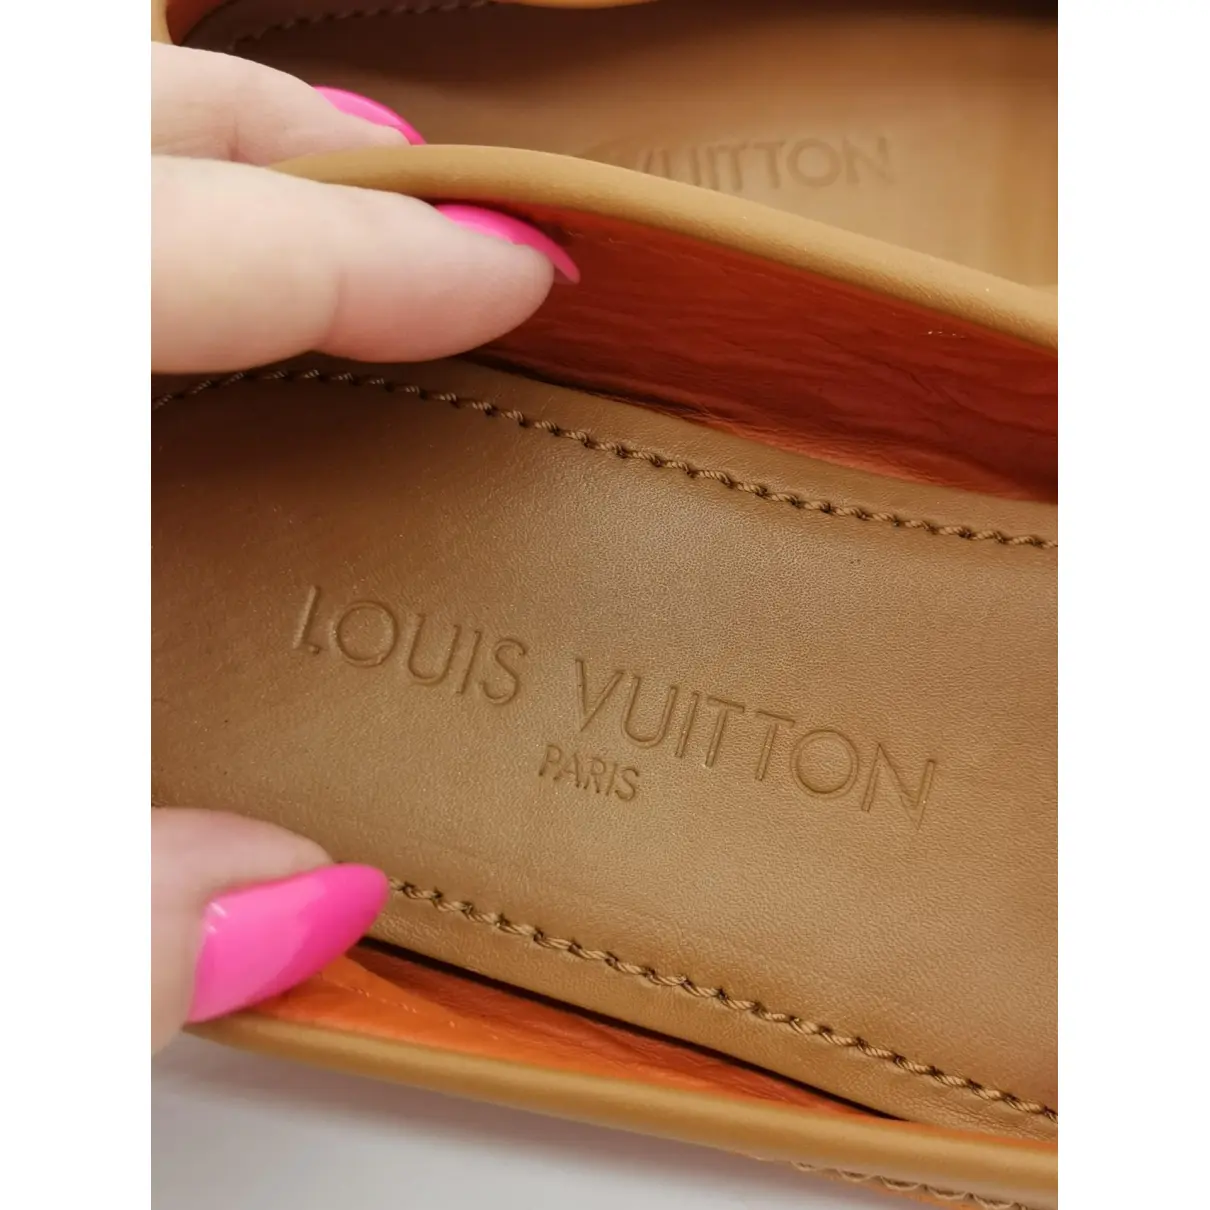 Flats Louis Vuitton